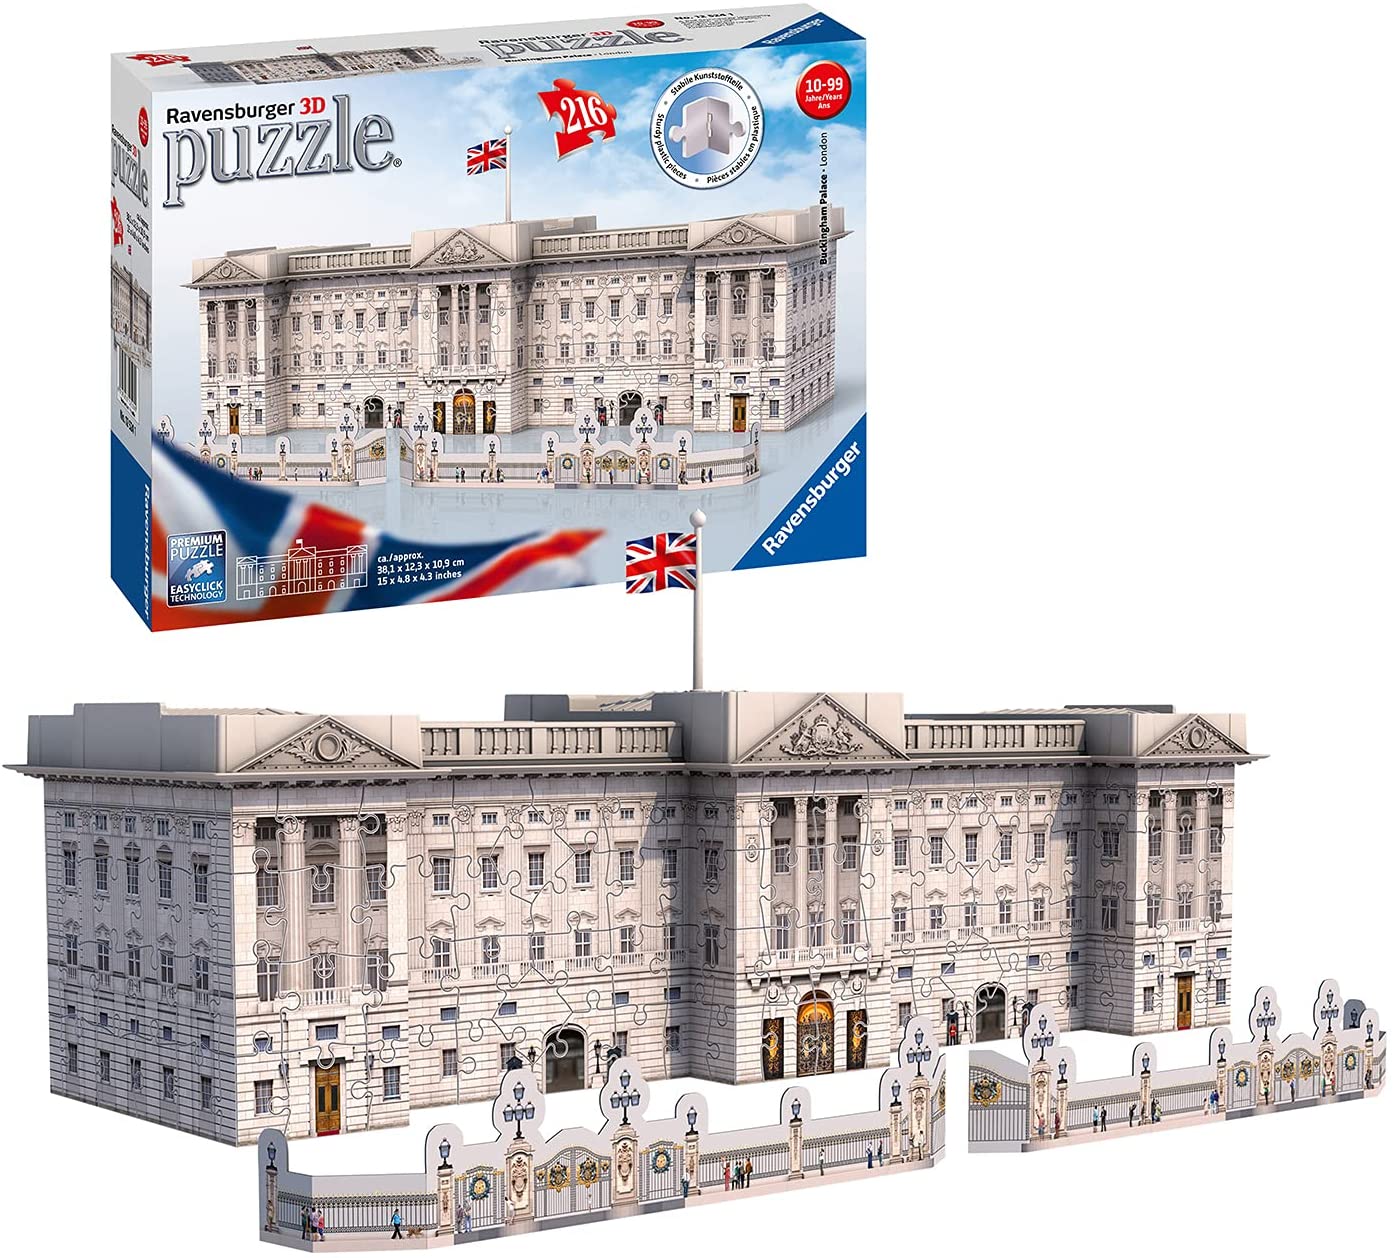 Bild zu Ravensburger 3D-Puzzle Buckingham Palace (12524) für 14,99€ (Vergleich: 25,50€)